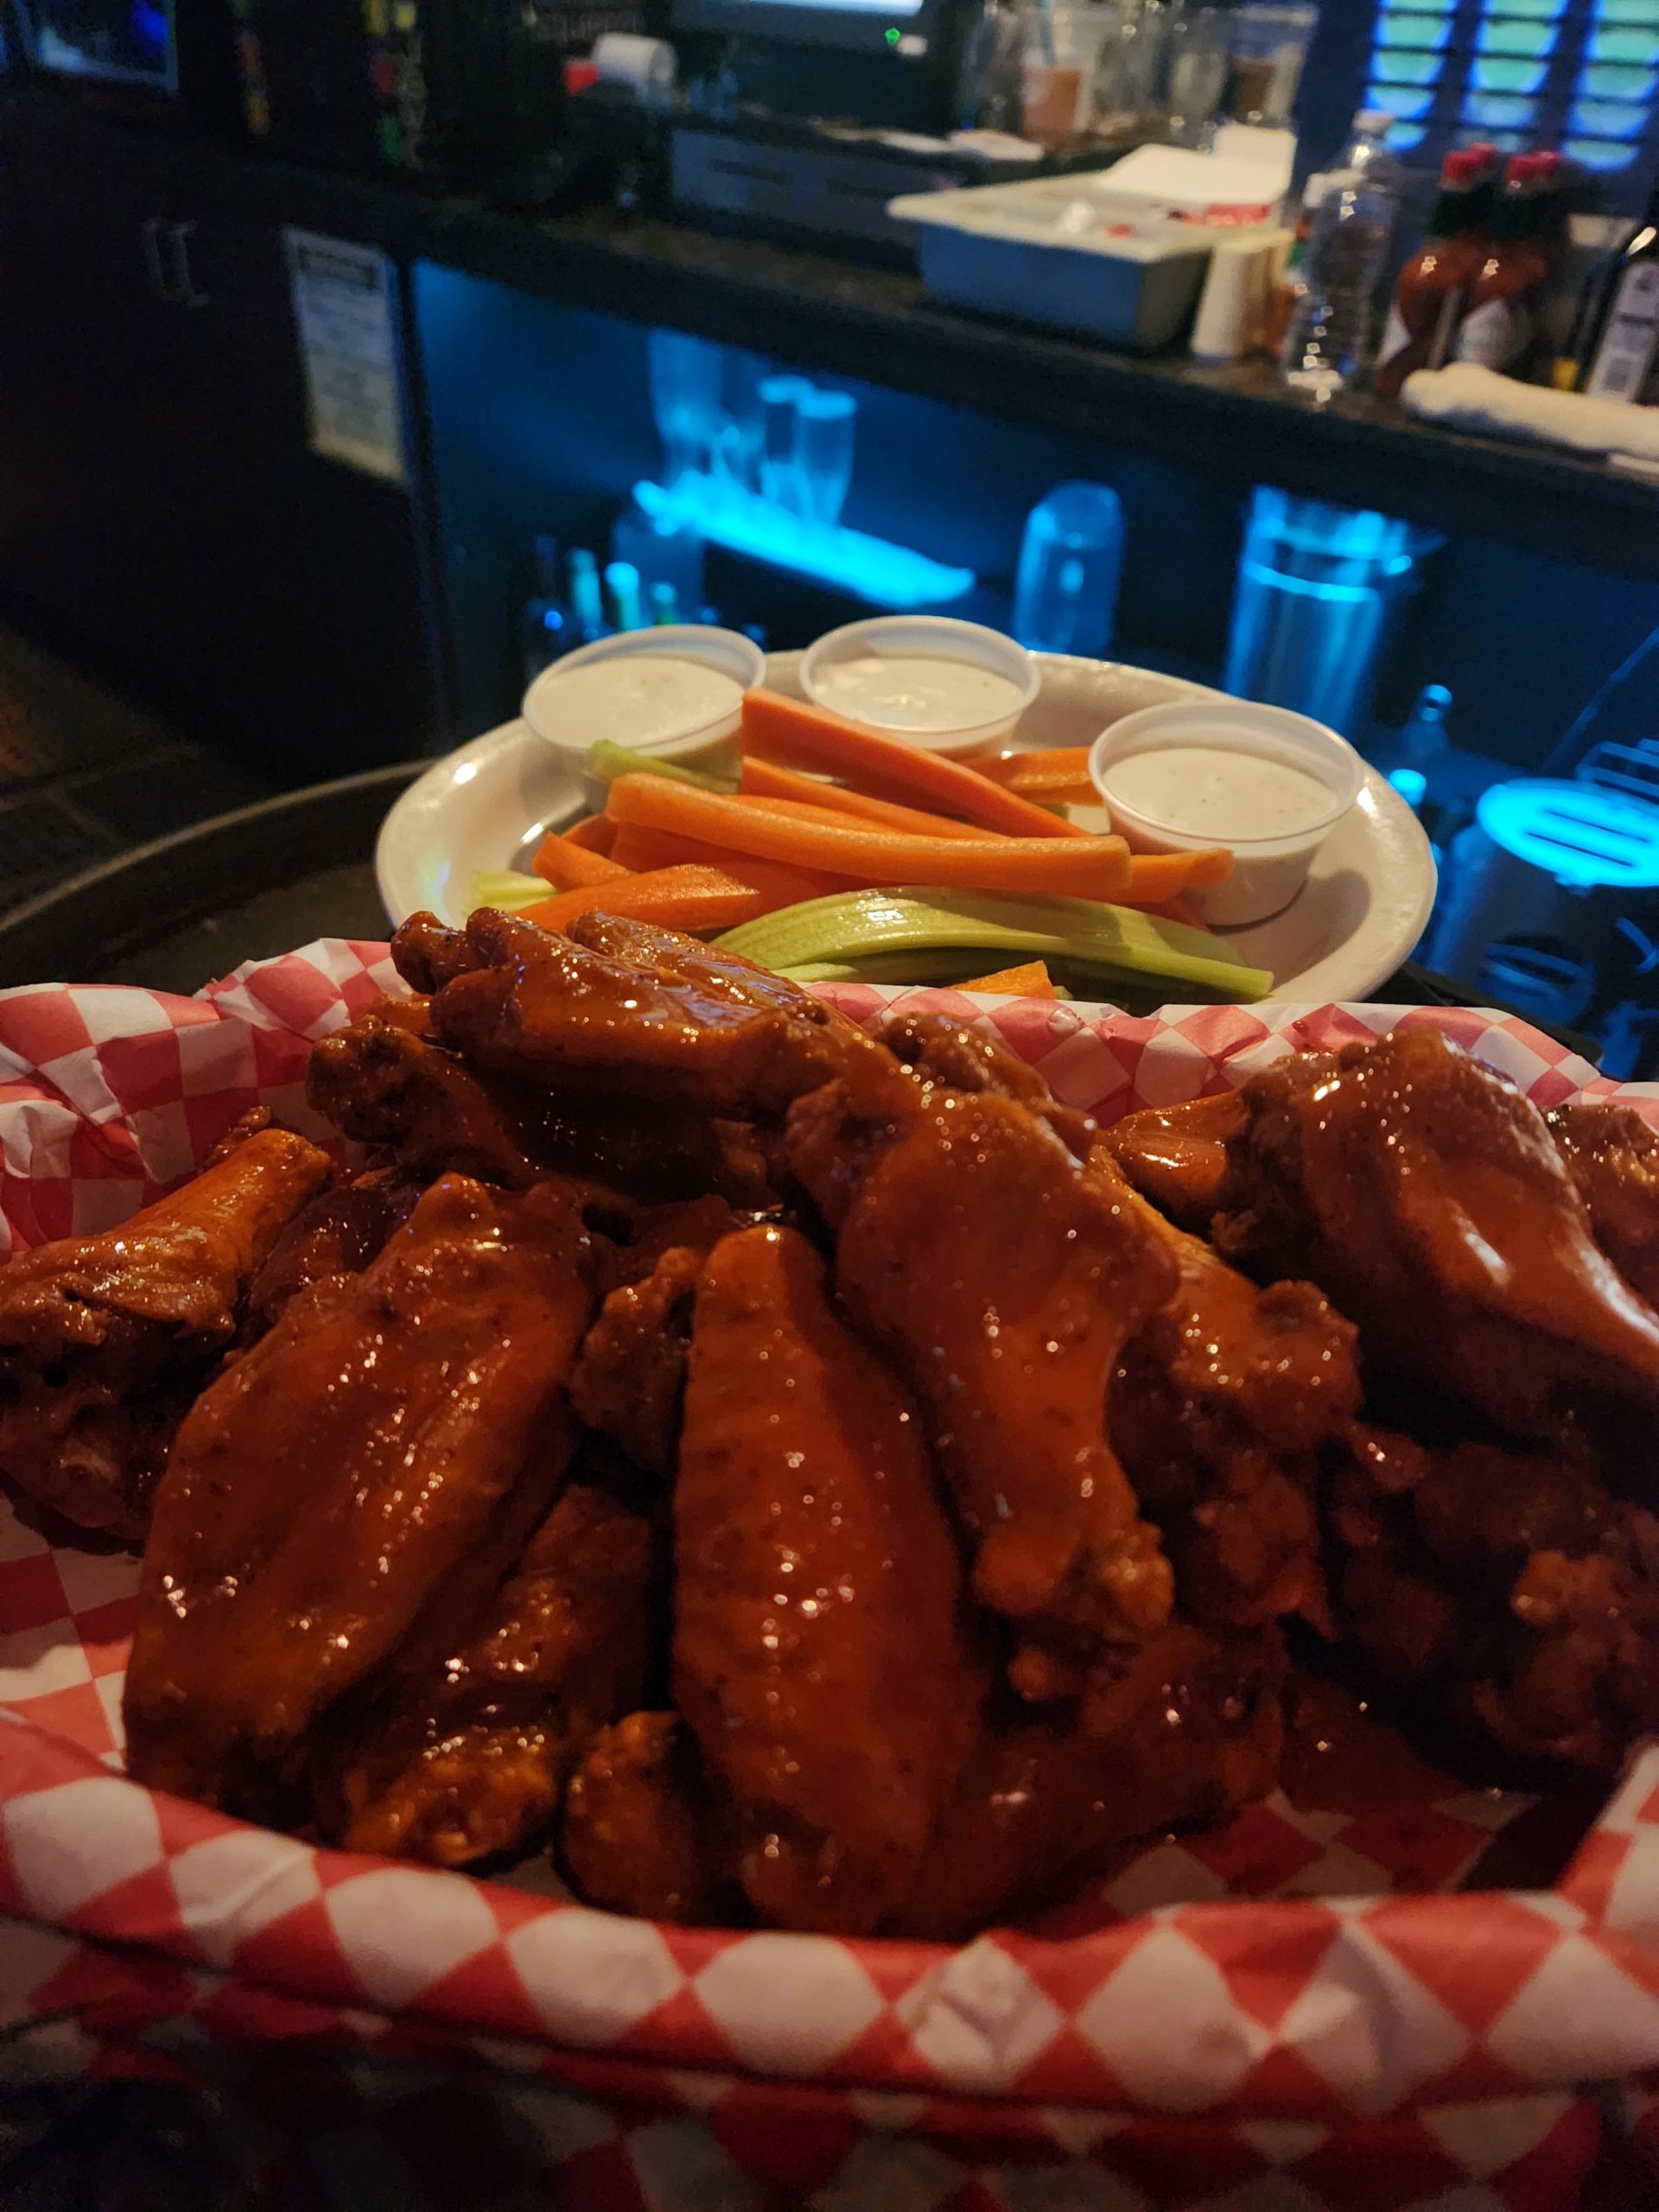 Fried Chicken wings - Bar food in Phoenix AZ